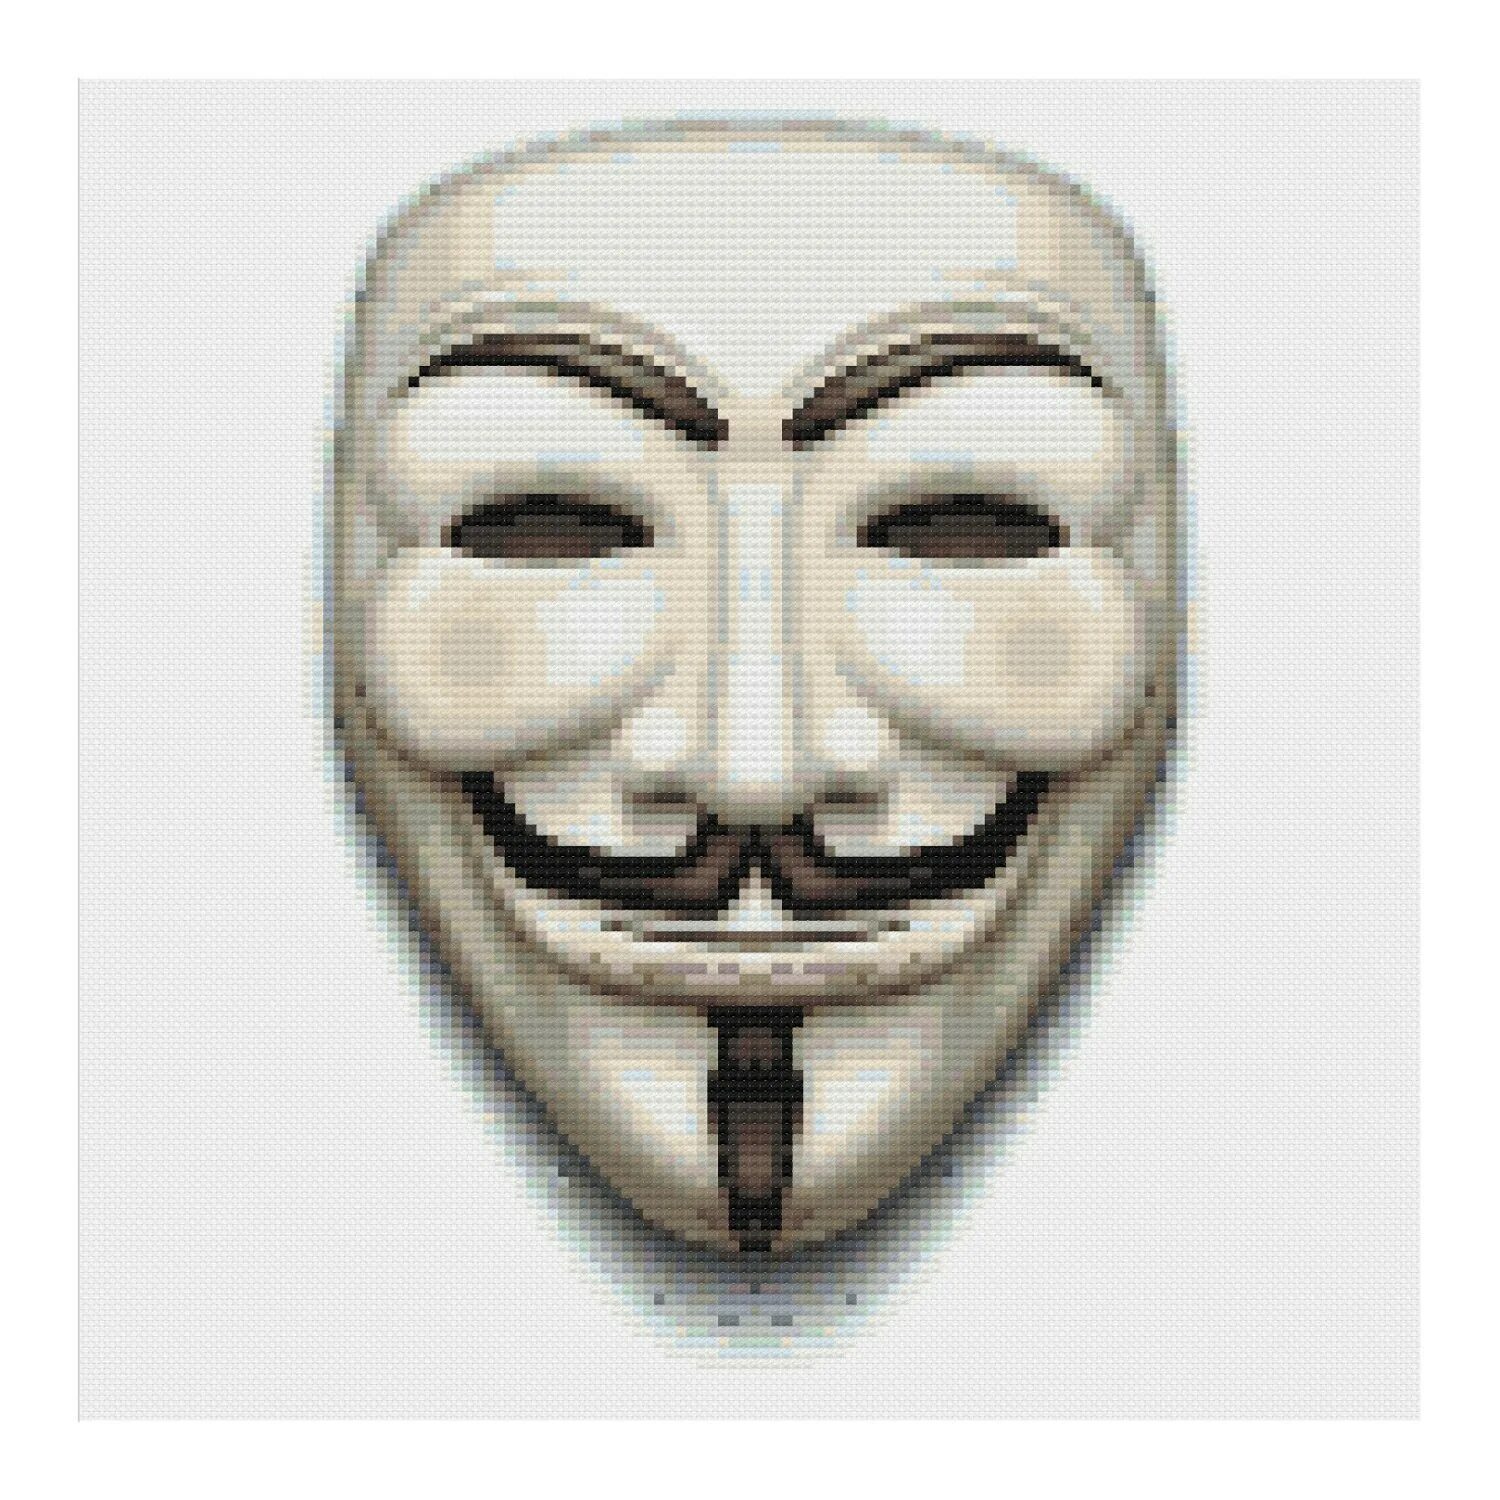 Маска Анонимуса 2д. Анонимус маска пиксельная. Прозрачная маска Анонимуса. Маска Анонимуса пиксель арт.